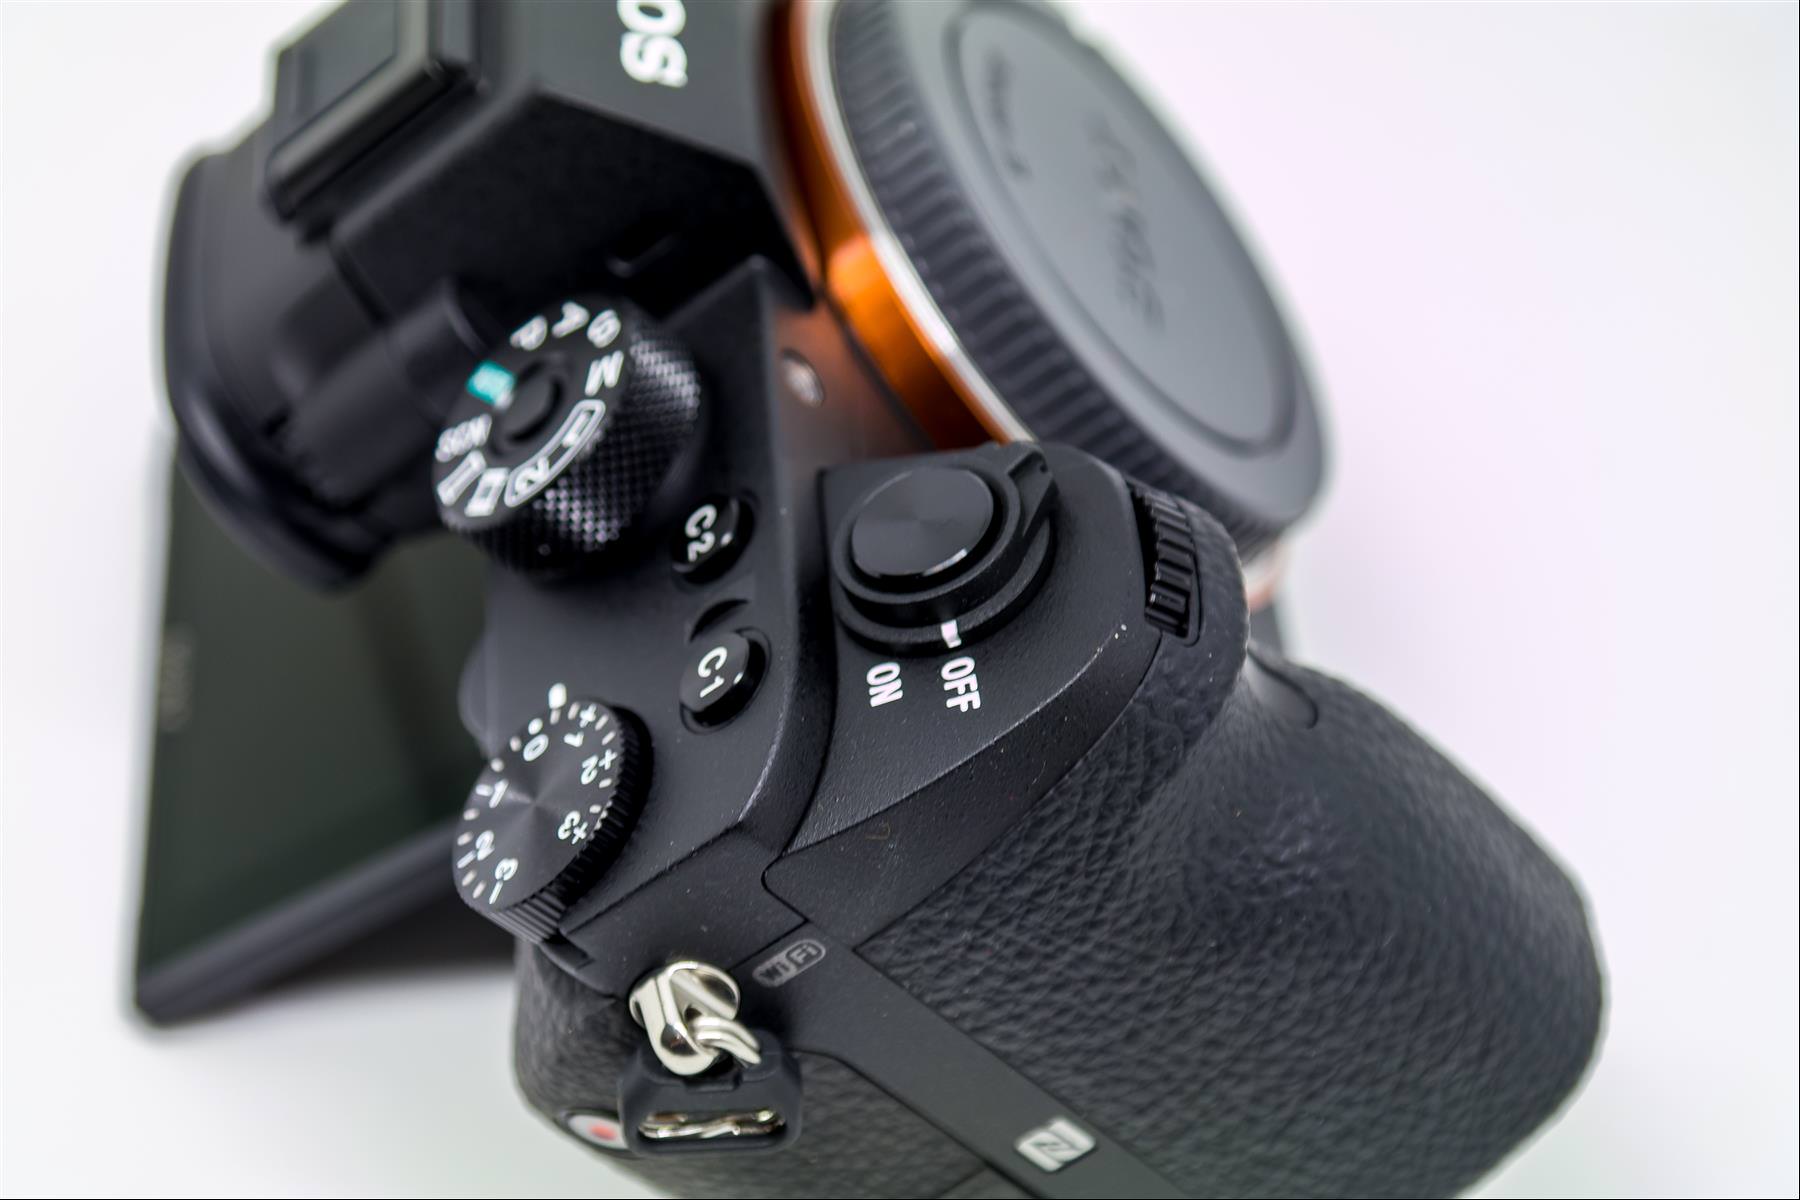 [比攝影75] Sony A7SM2 最高感光度表現旗艦機皇，征服微光攝影